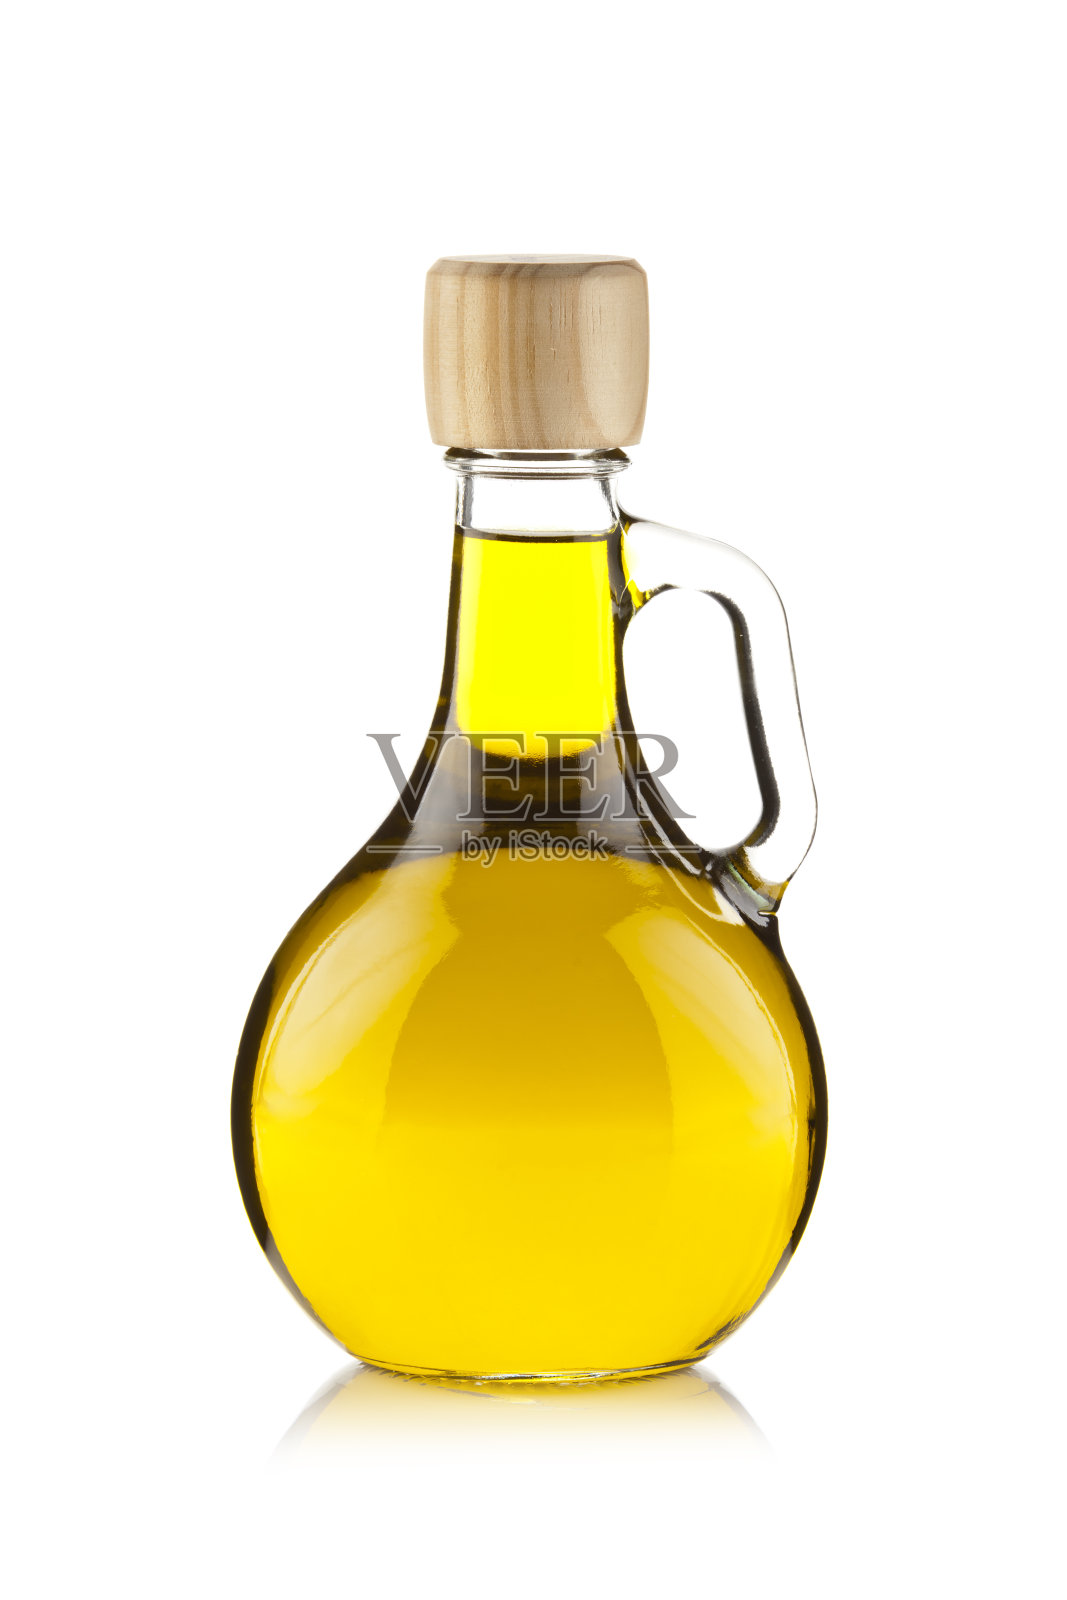 橄榄油装在一个带把手的干净玻璃瓶里照片摄影图片